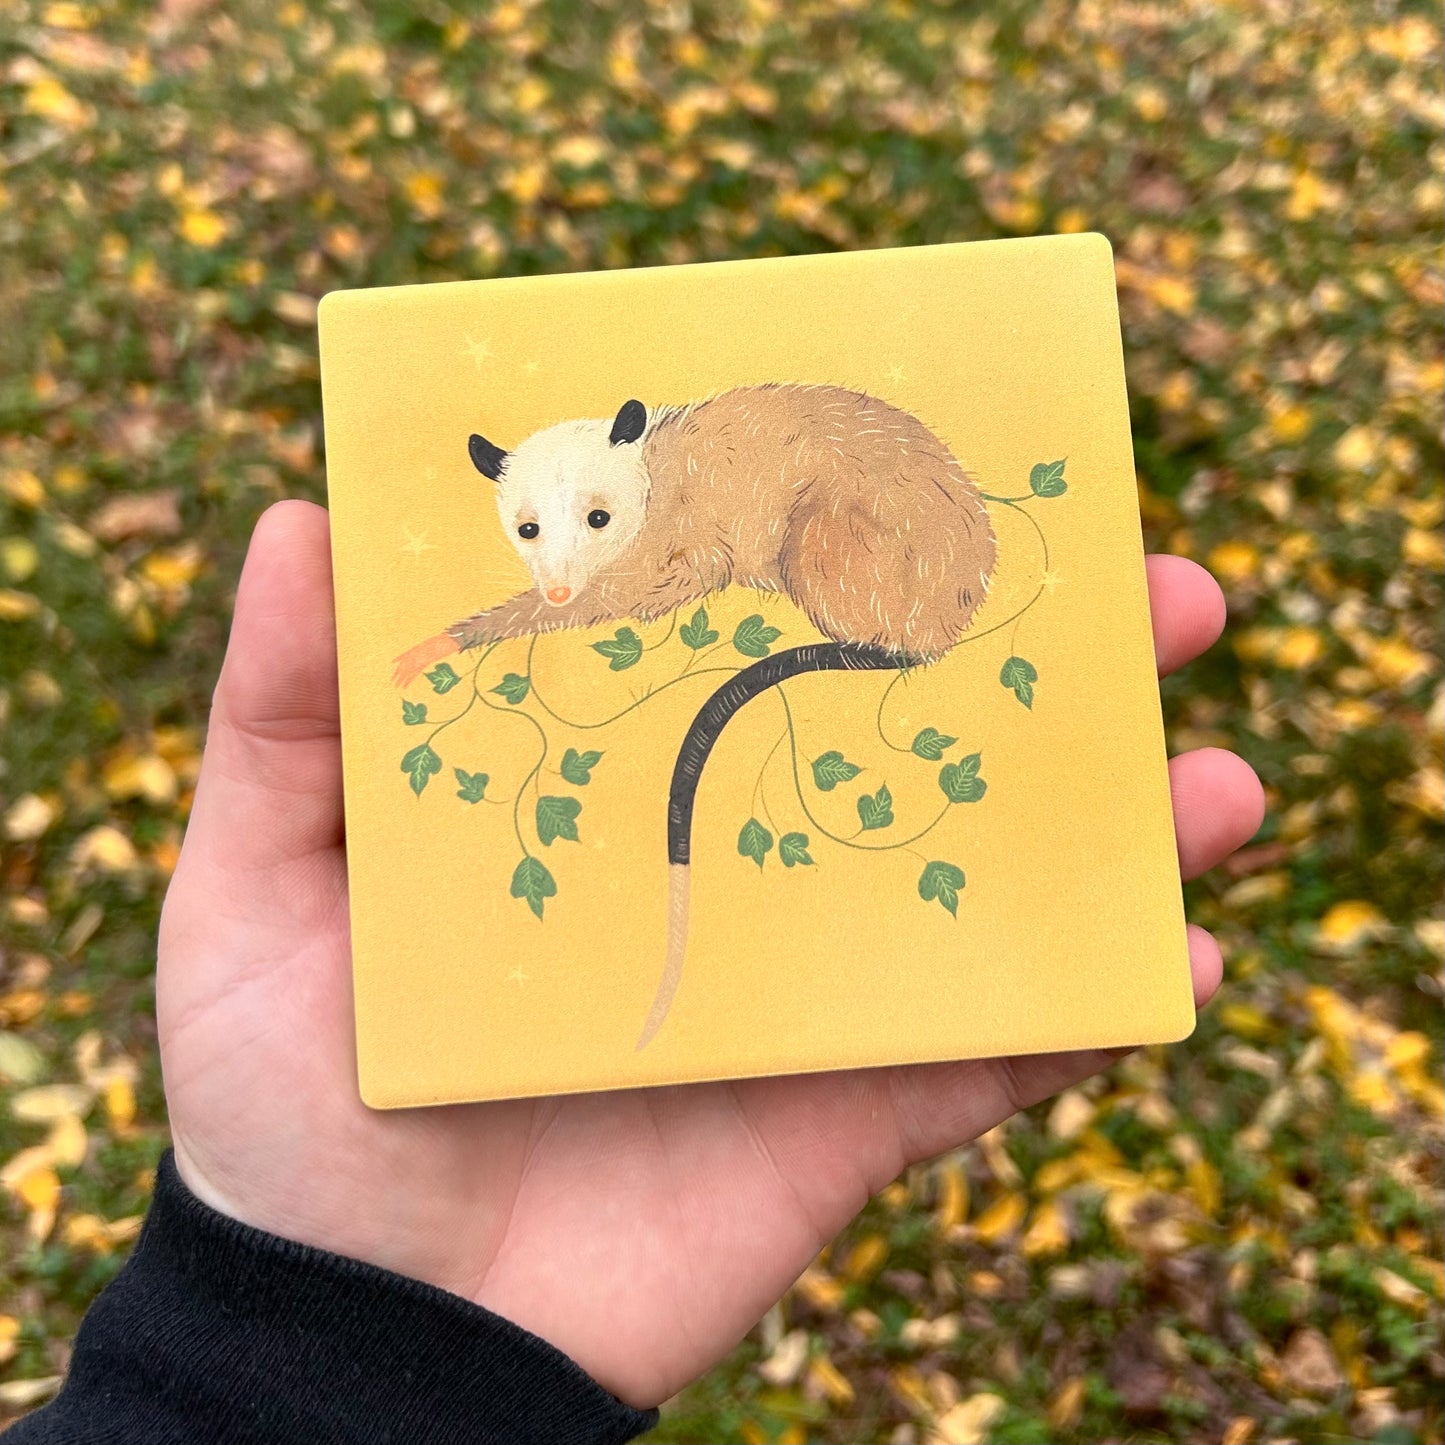 Peaceful 'Possum Ceramic Coaster